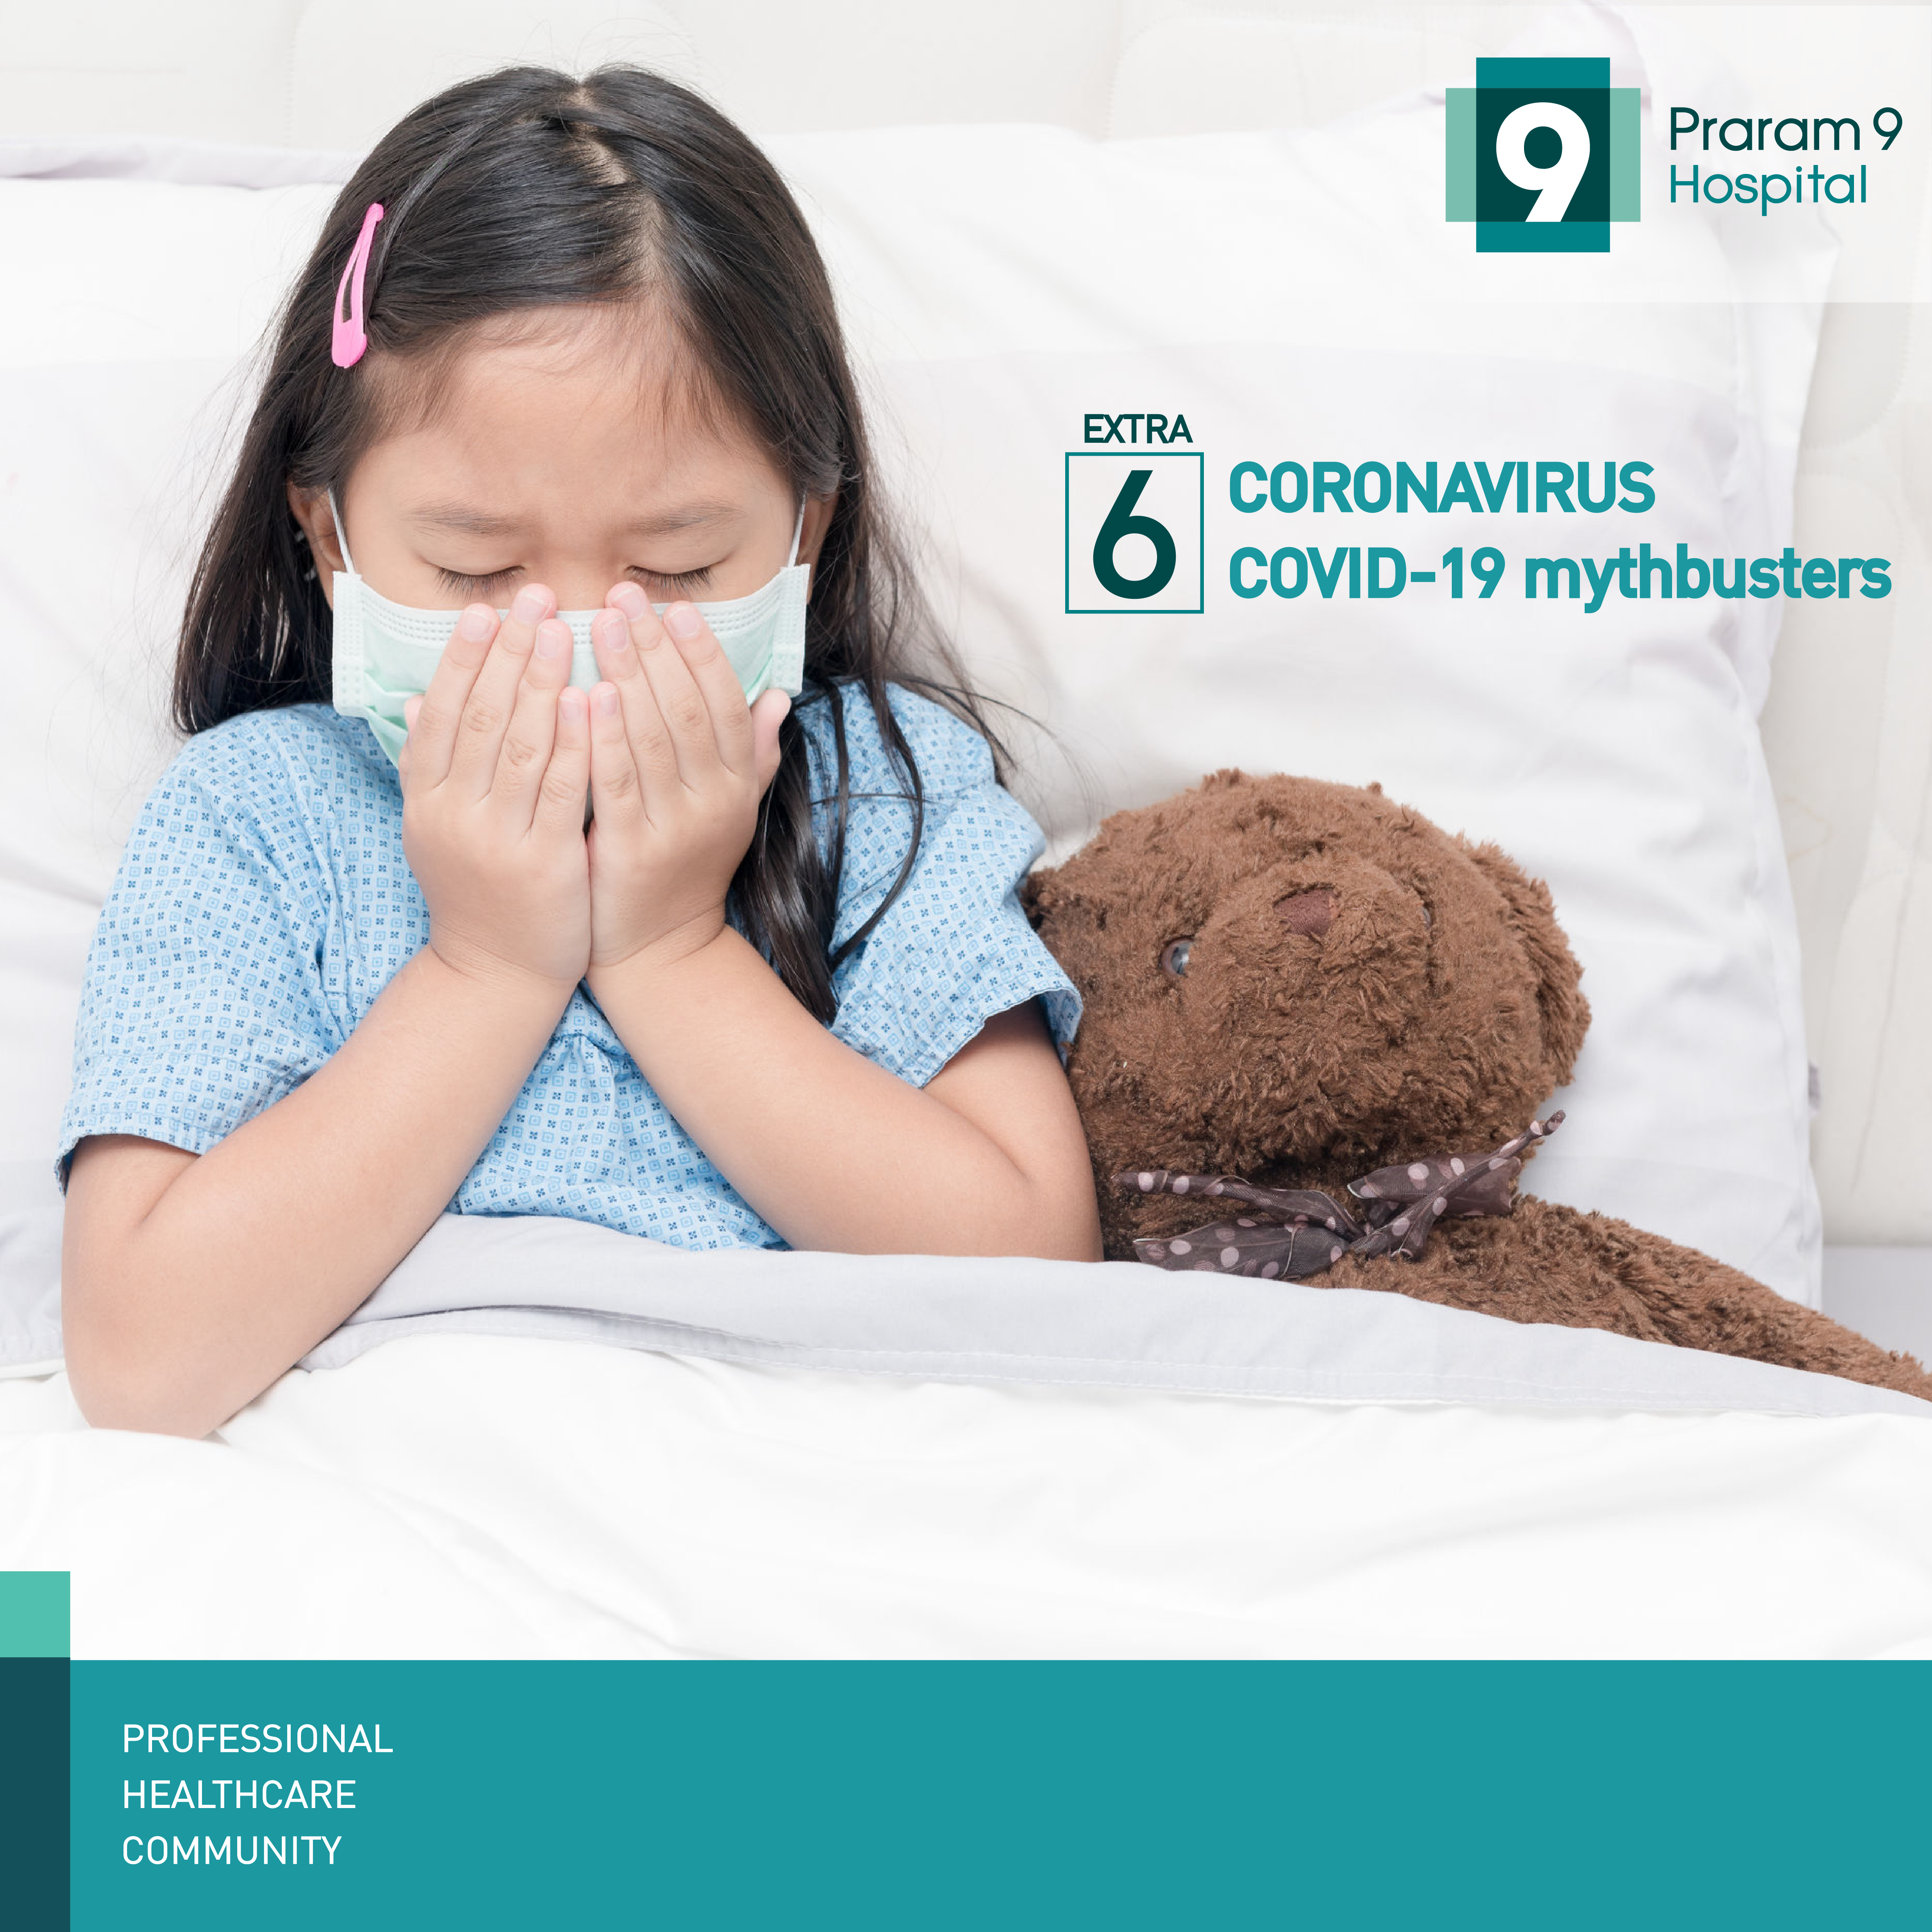 6 Coronavirus COVID-19 mythbusters